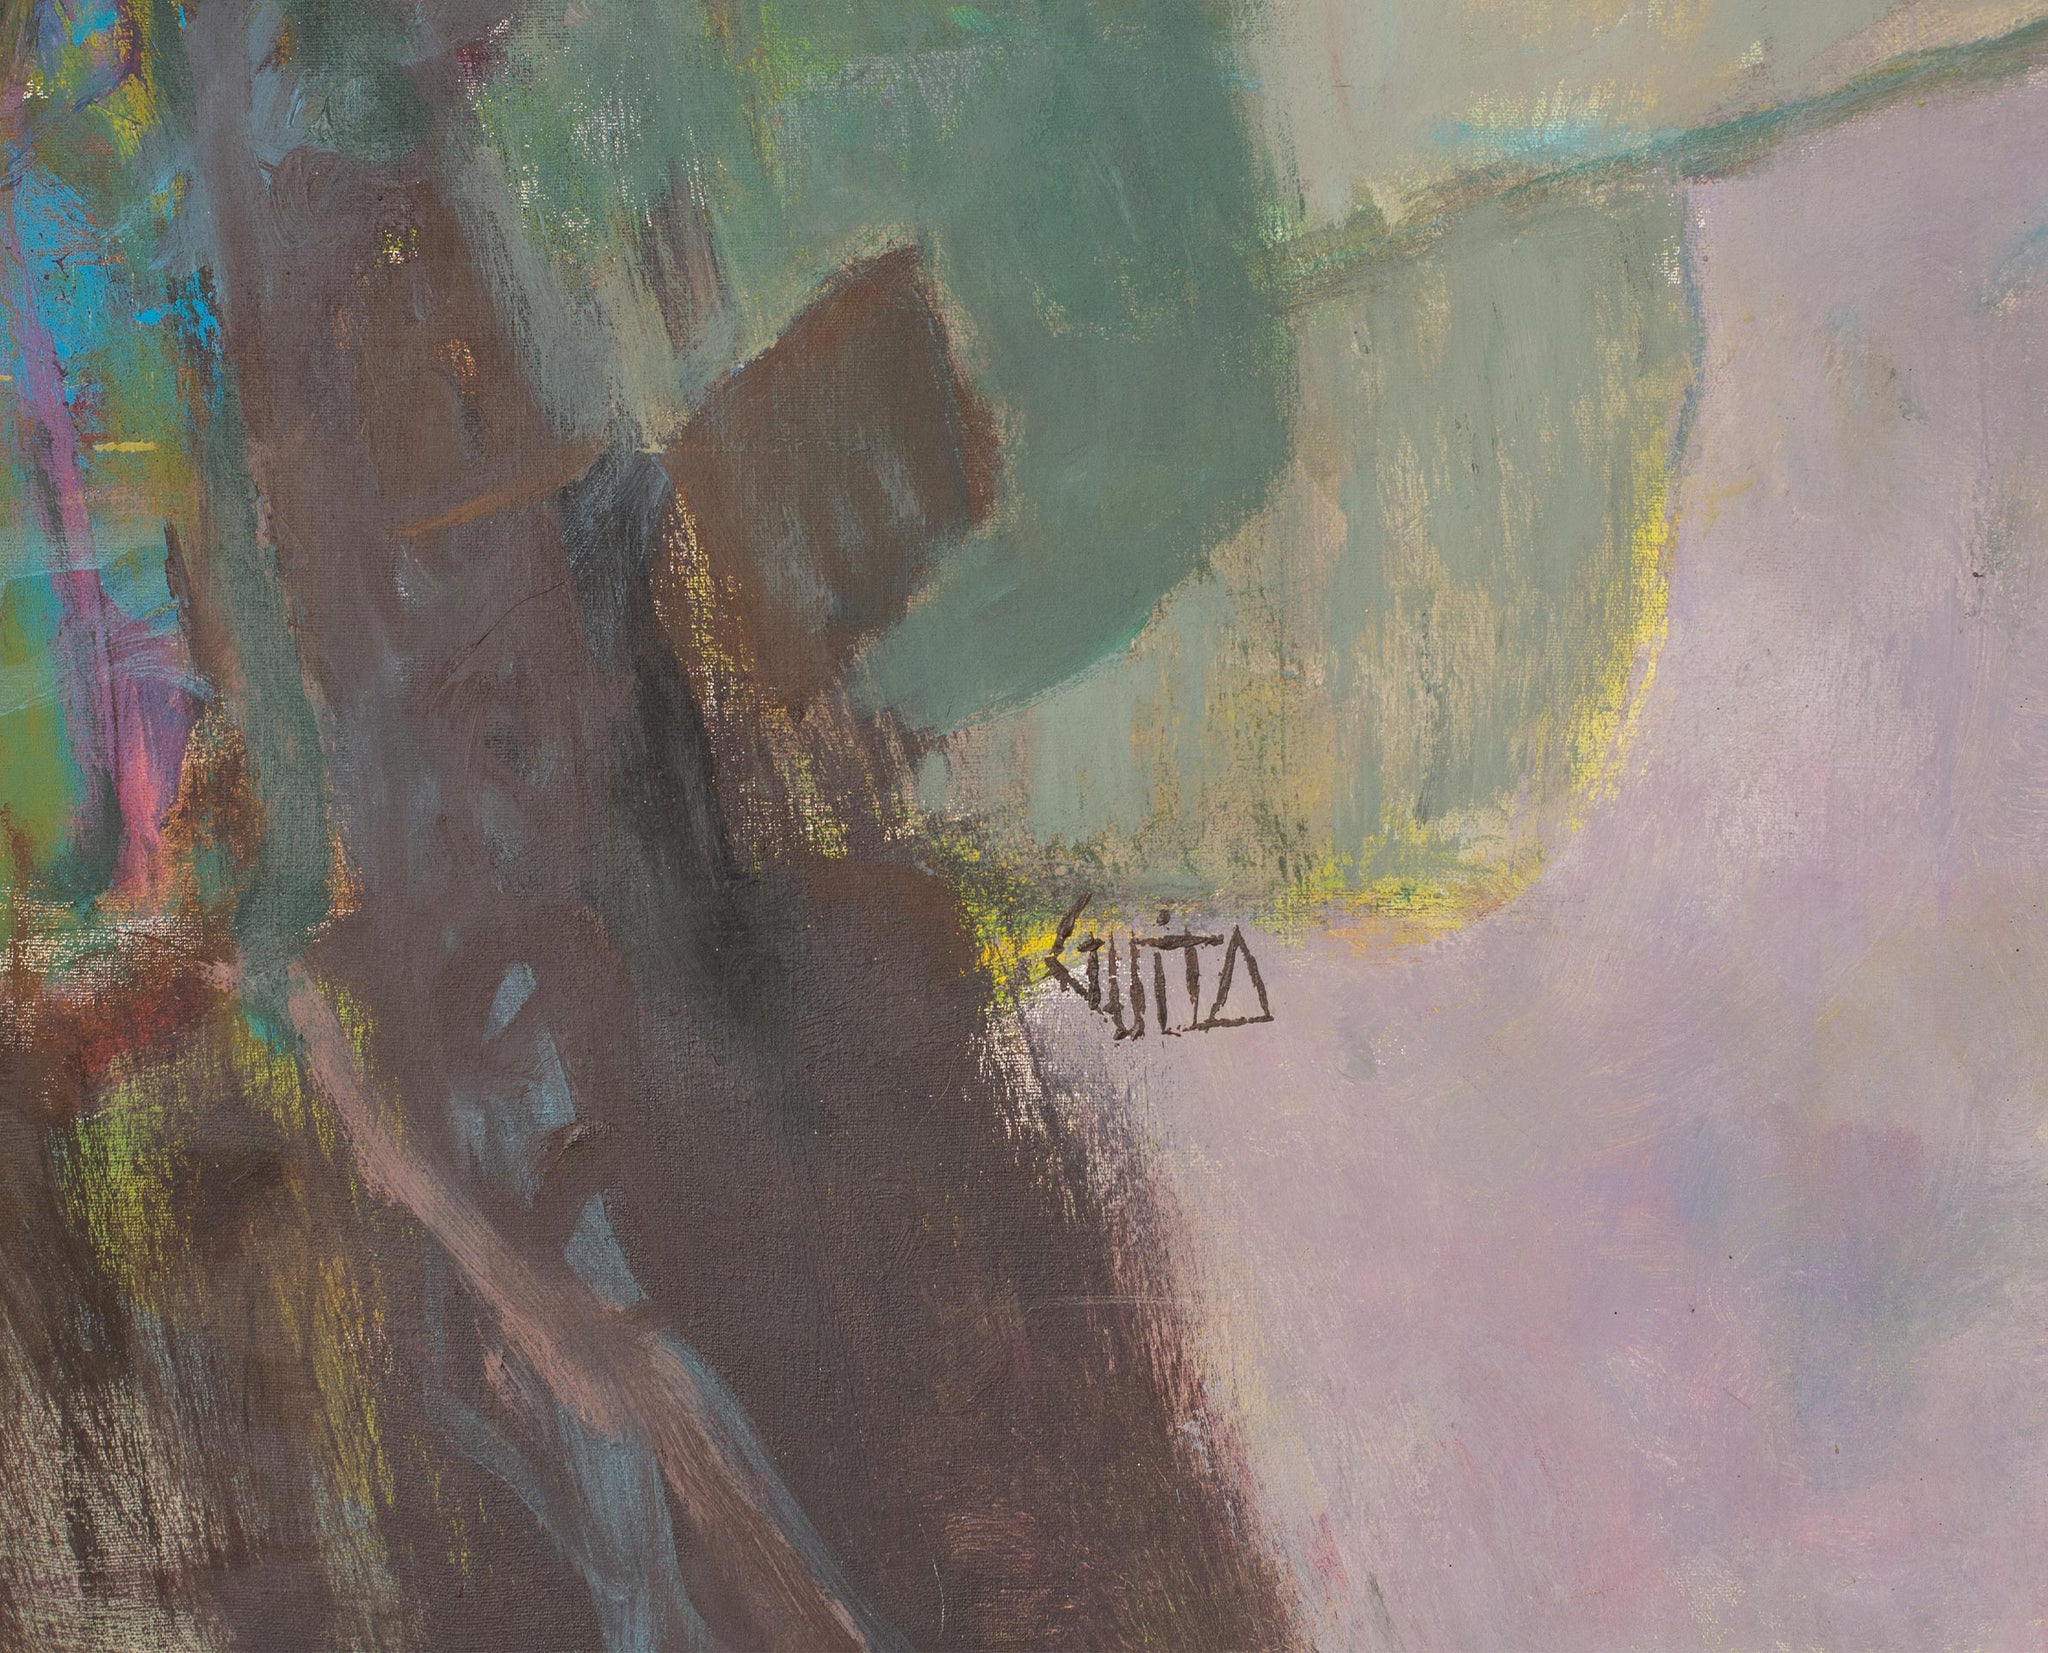 Signature du peintre Guita Moncef sur le tableau d'art du peintre Moncef GUITA, d'expression figurative décrivant l'arbre brisé dans son environnement. Œuvre aux traits graphique et aux couleurs ternes, au coup de pinceau caractéristique de Guita.